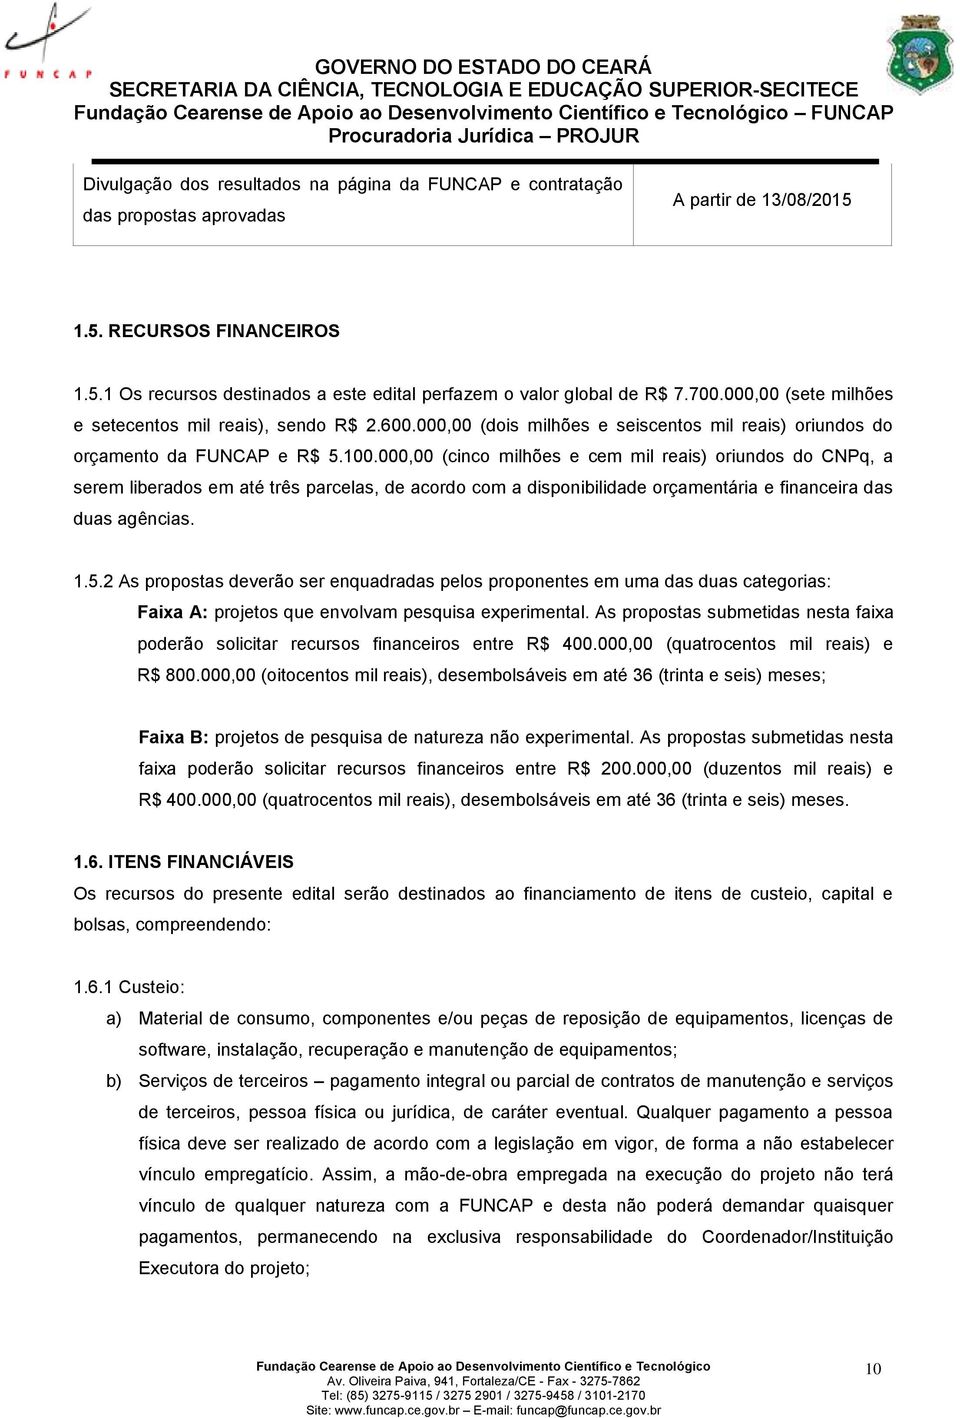 000,00 (cinco milhões e cem mil reais) oriundos do CNPq, a serem liberados em até três parcelas, de acordo com a disponibilidade orçamentária e financeira das duas agências. 1.5.